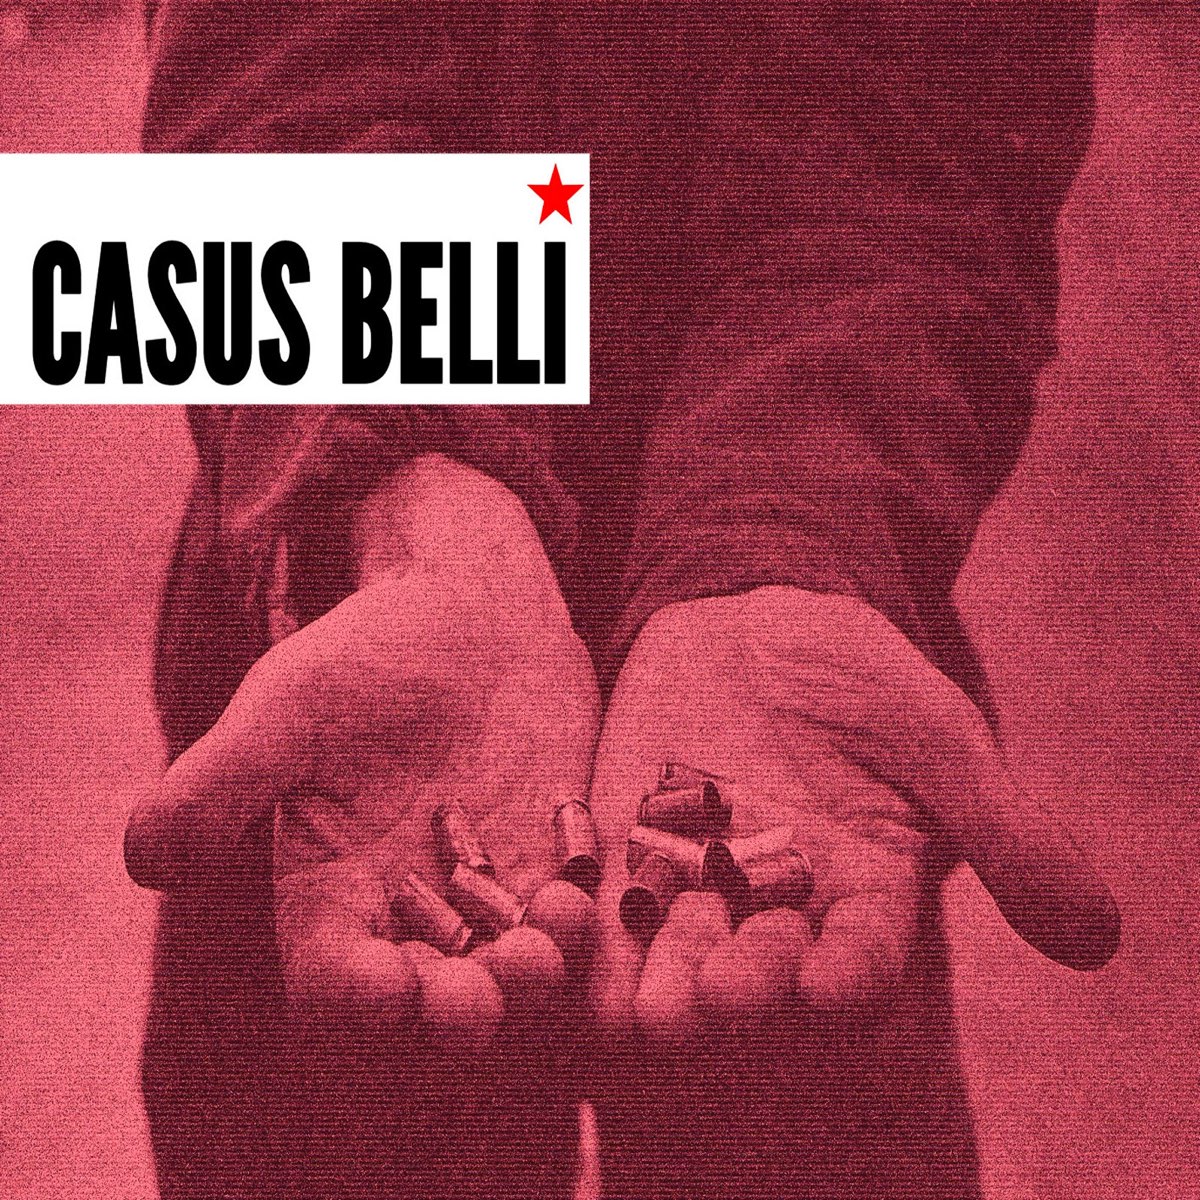 Casus belli перевод. Casus belli группа. Сфабриковать casus belli. Casus belli пропагандист.